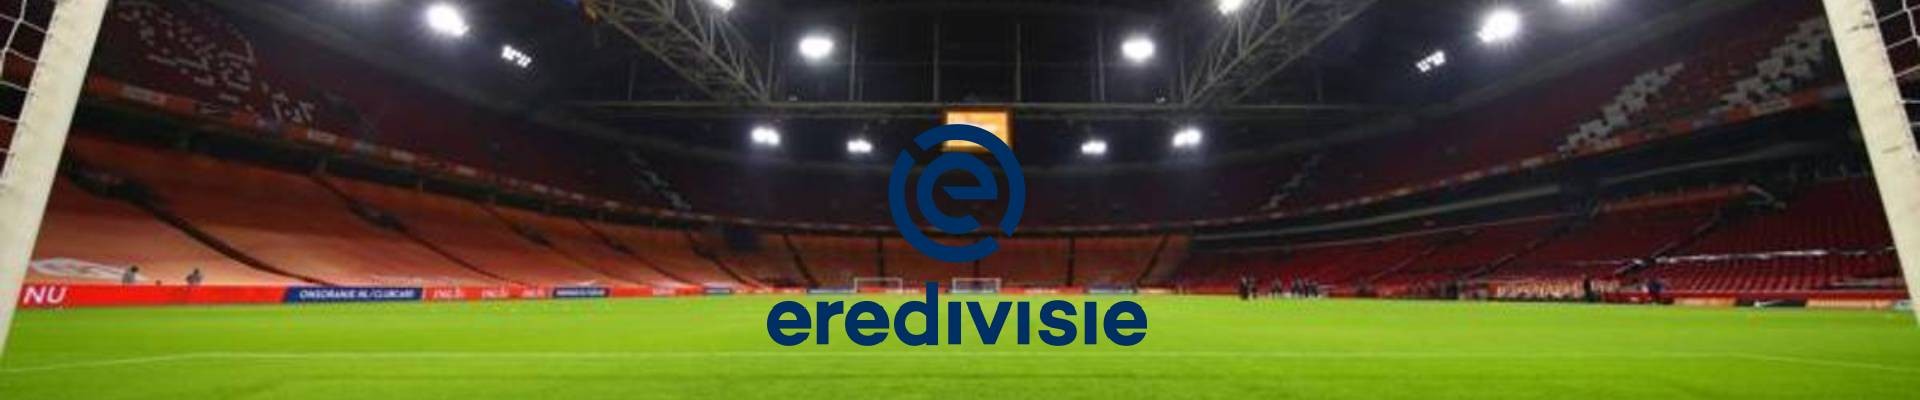 Hollanda Eredivisie Maç Biletleri